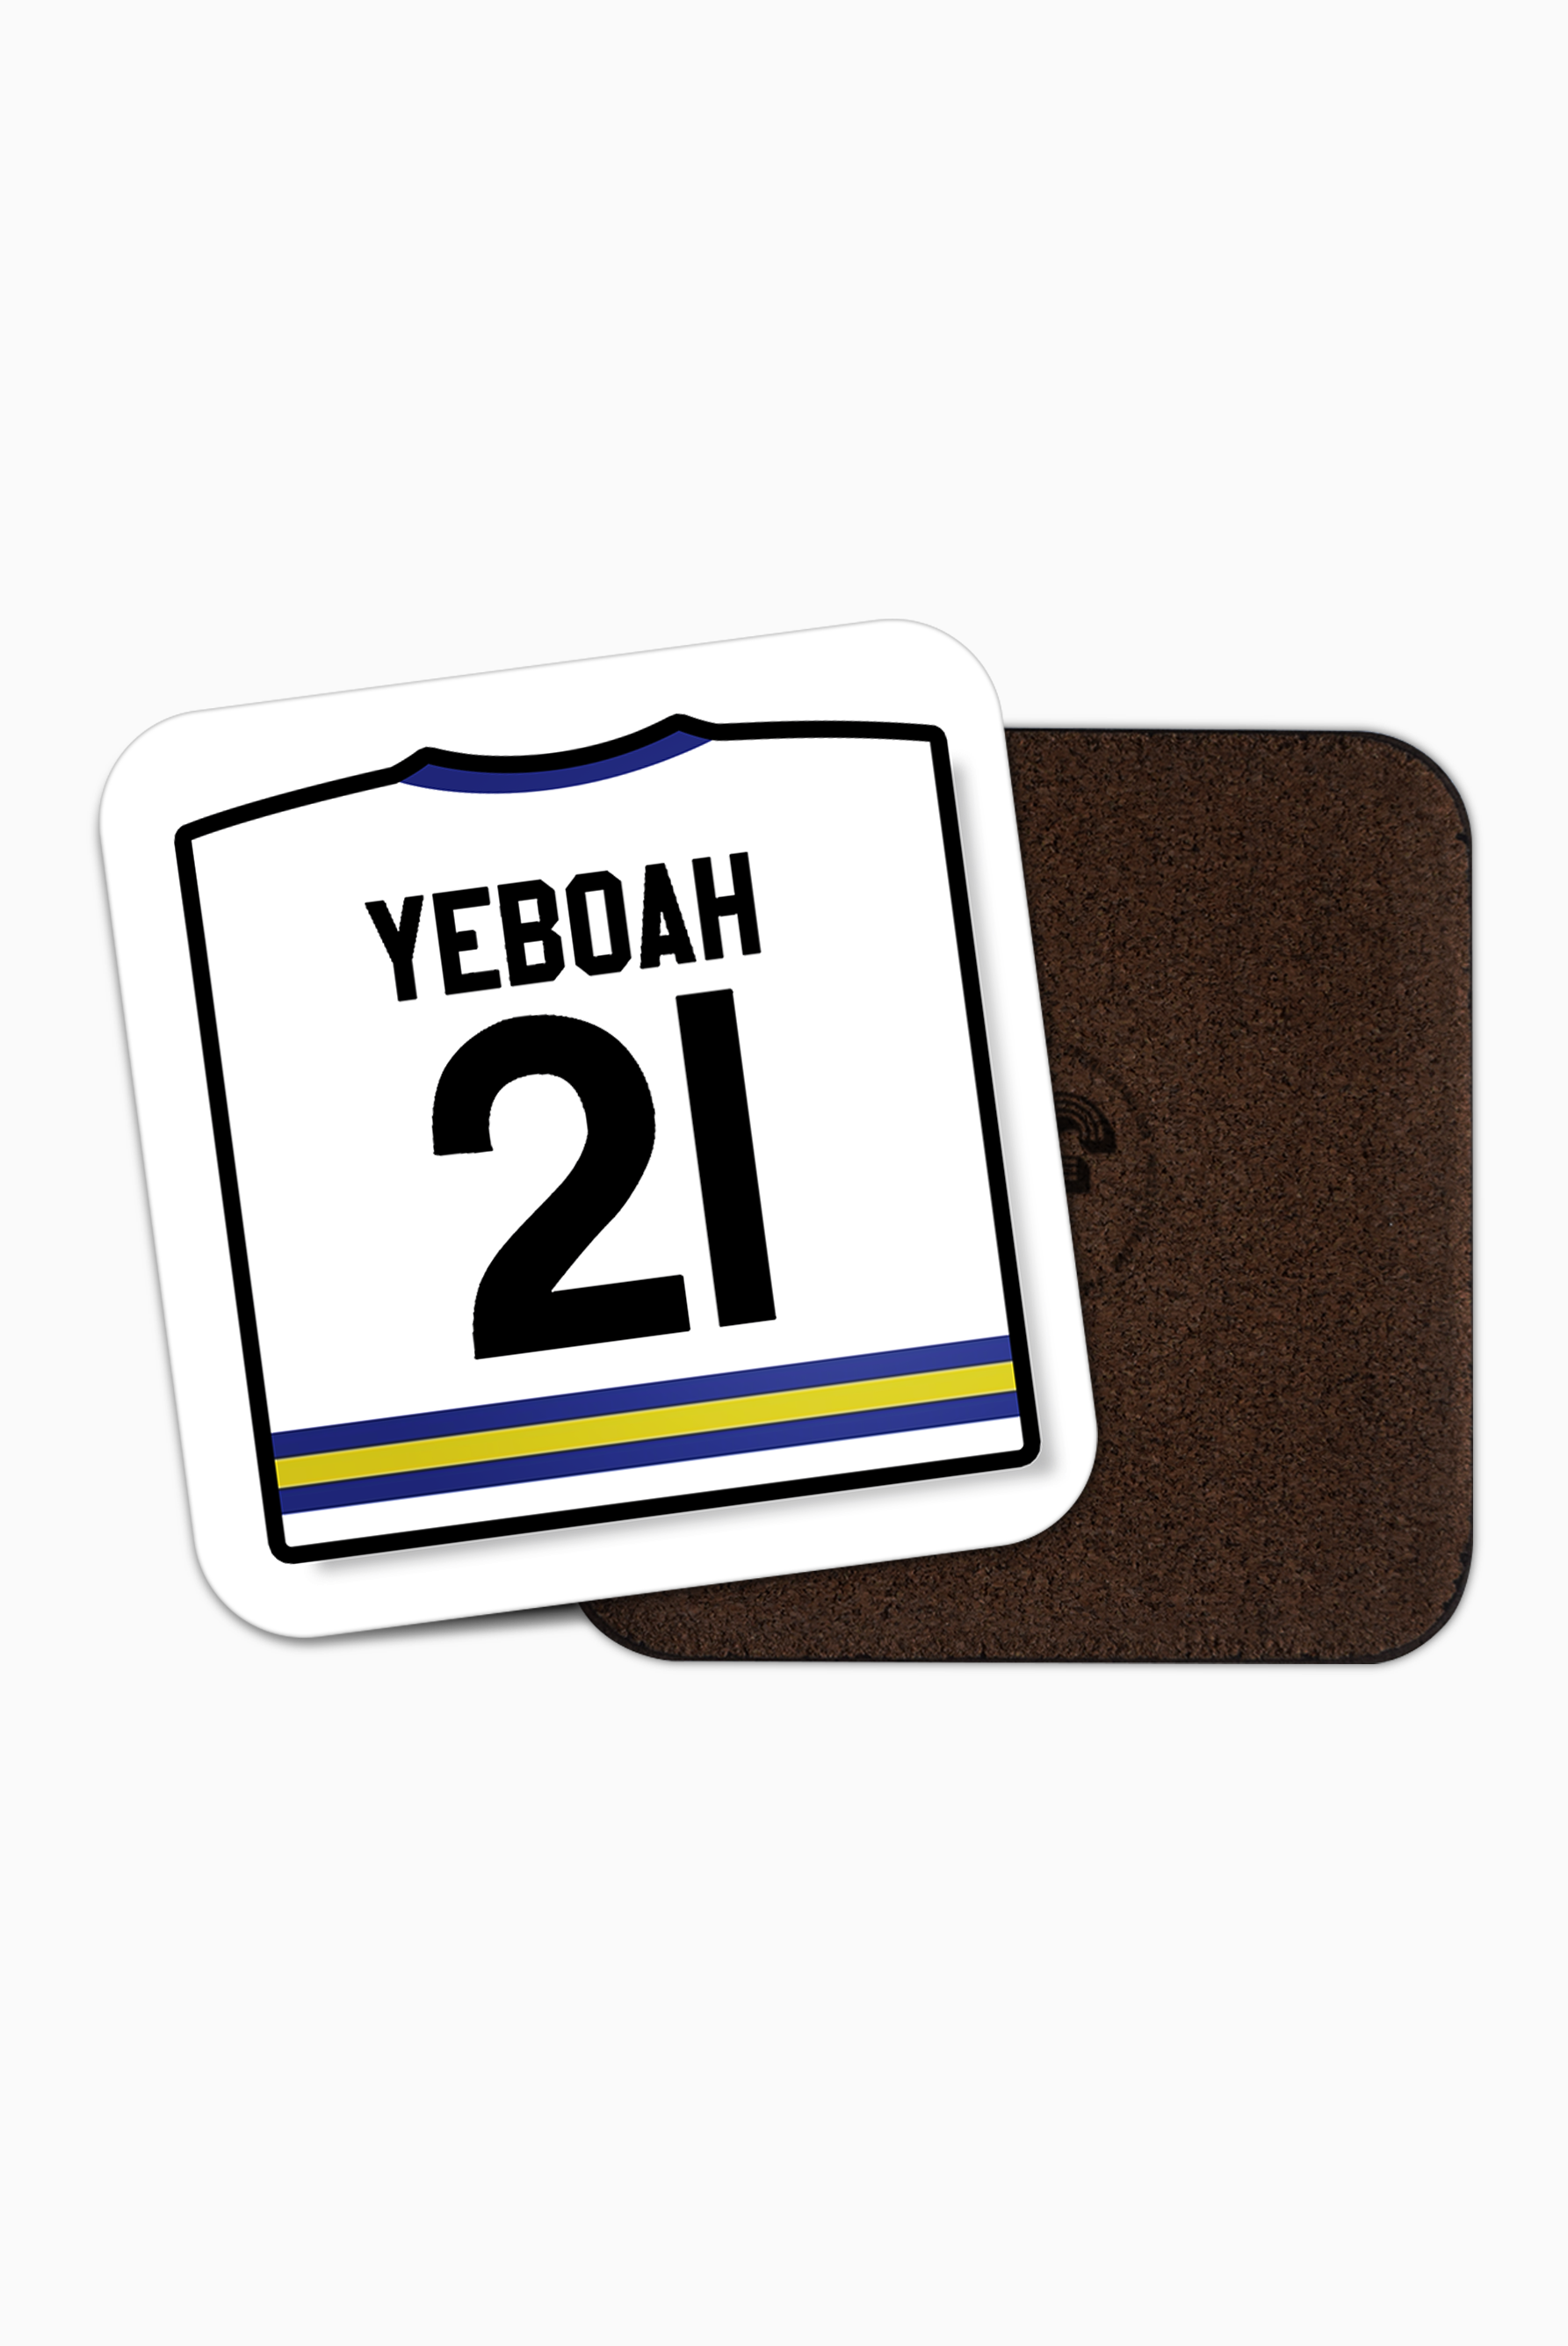 Leeds / Yeboah '21' Coaster